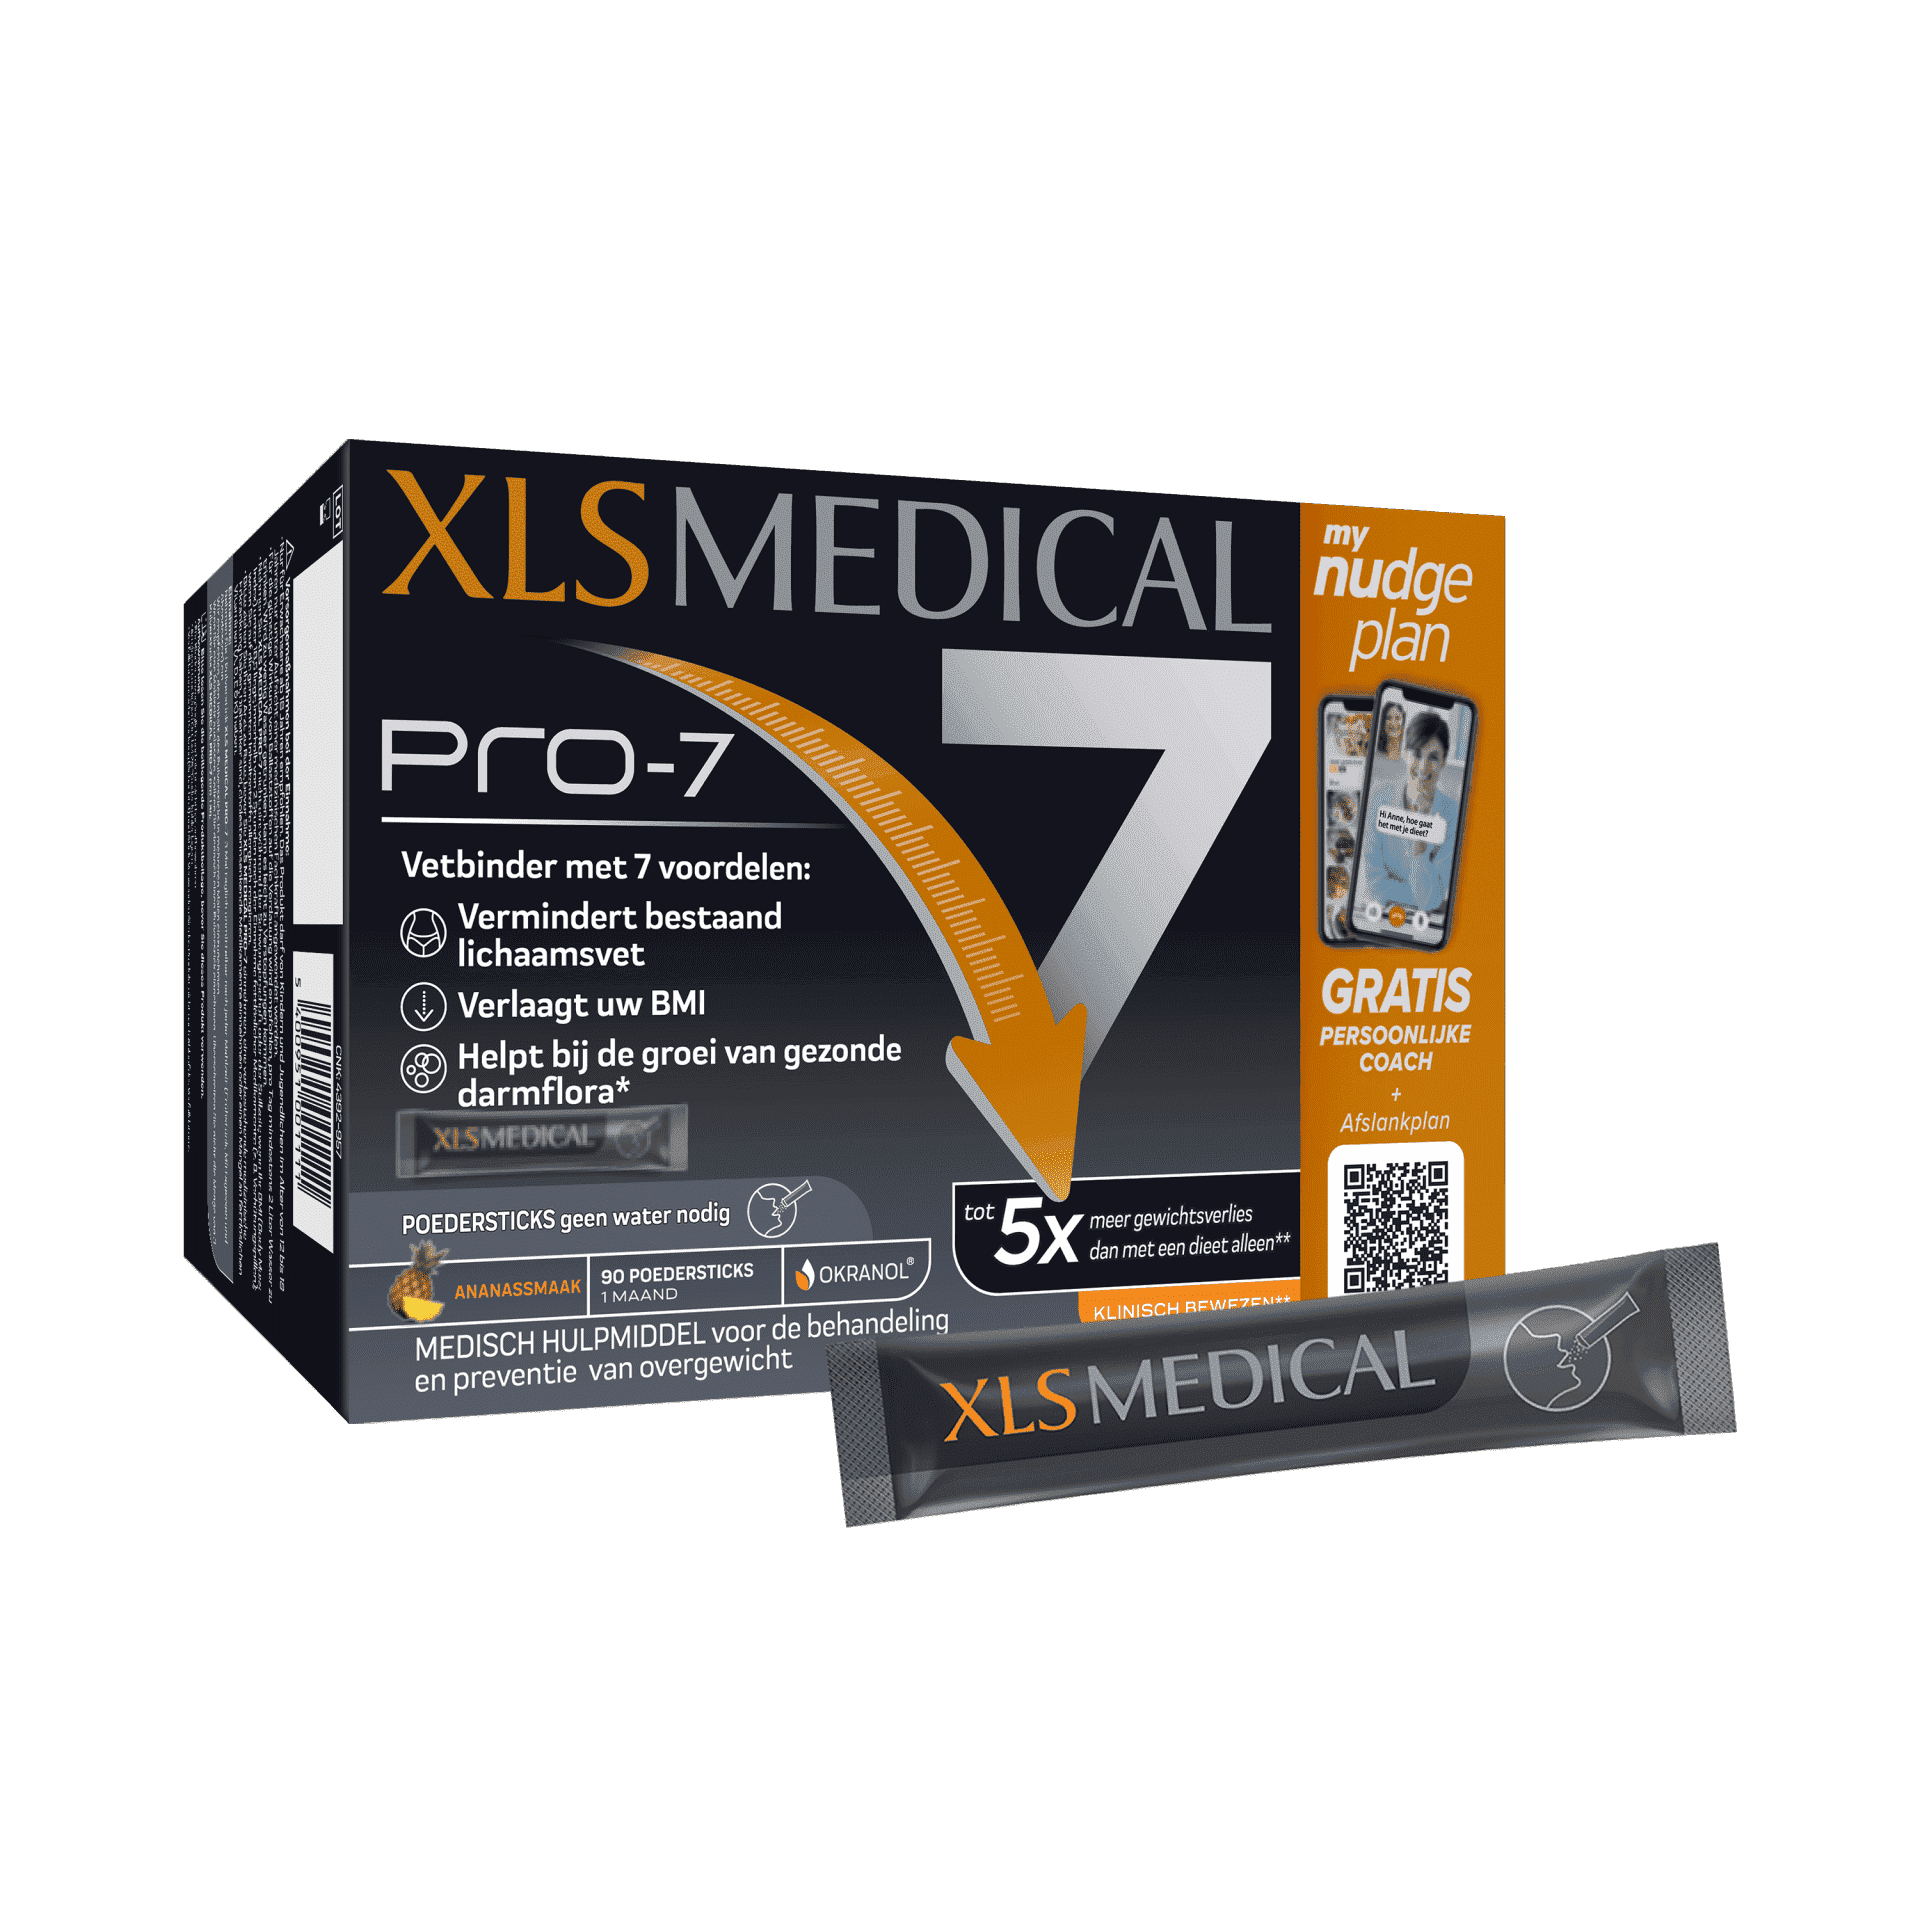 XLS Medical Pro-7 Poedersticks - GRATIS PERSOONLIJKE COACH + Afslankplan